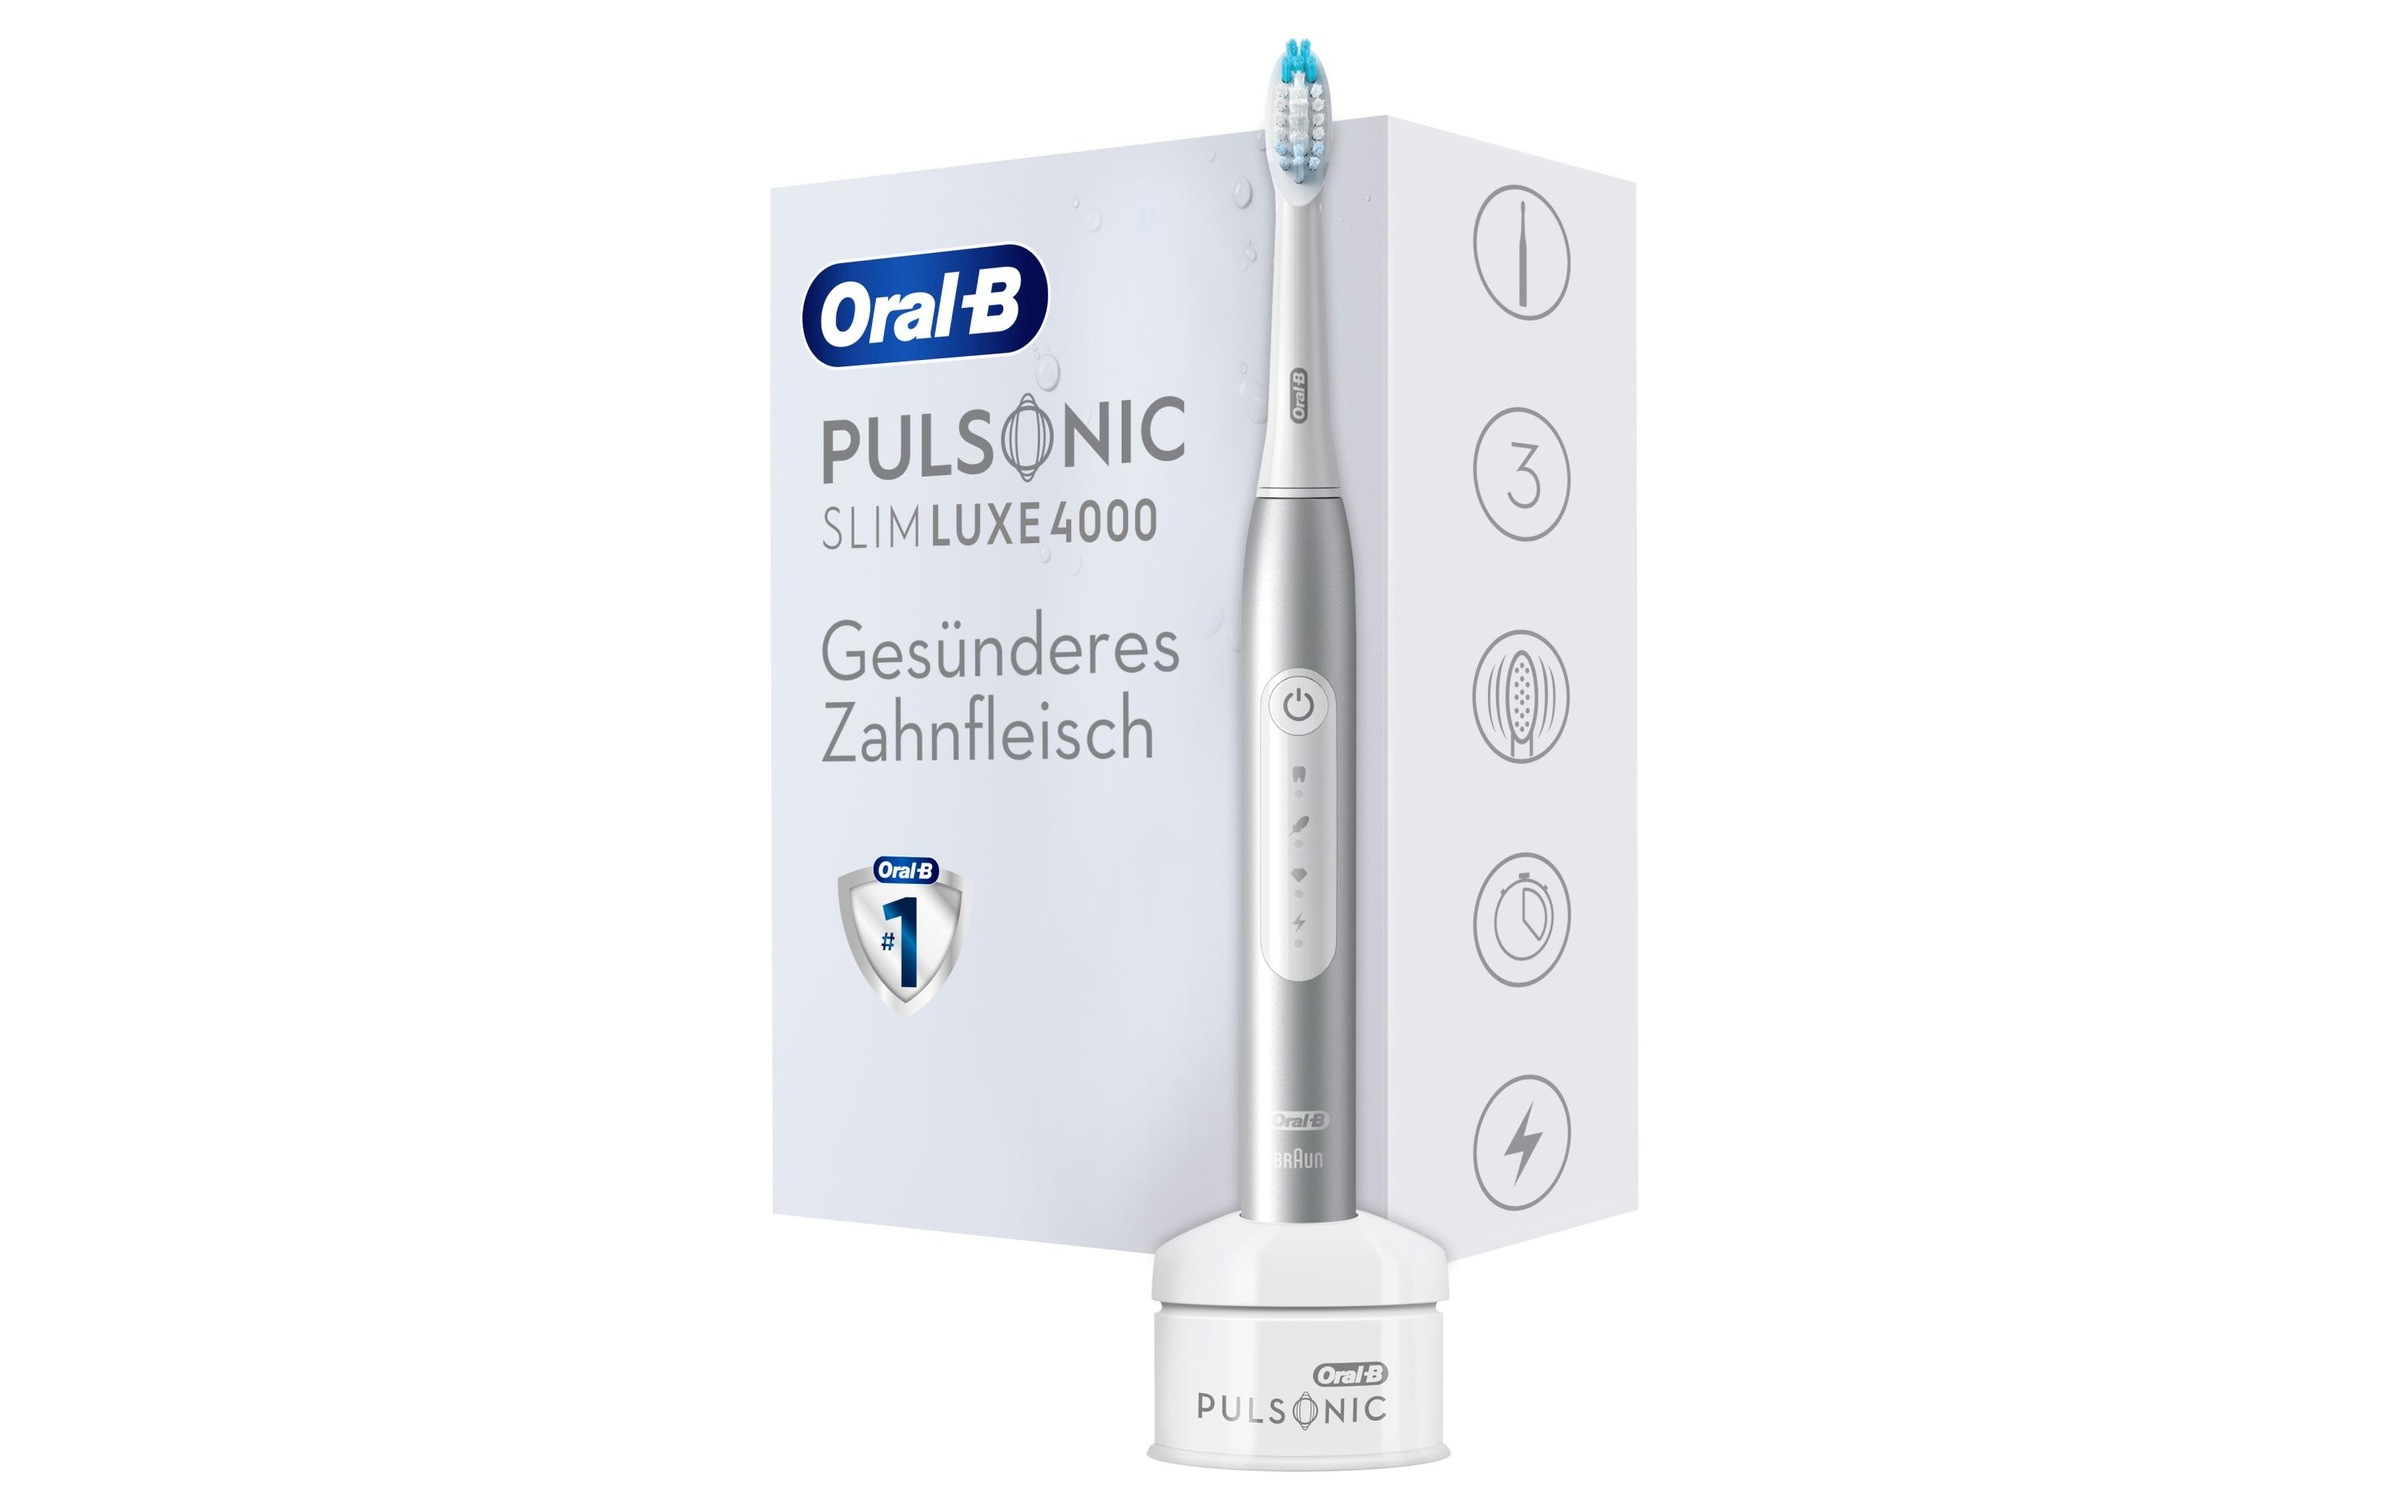 Oral-B Schallzahnbürste »Luxe 4000 Platin«